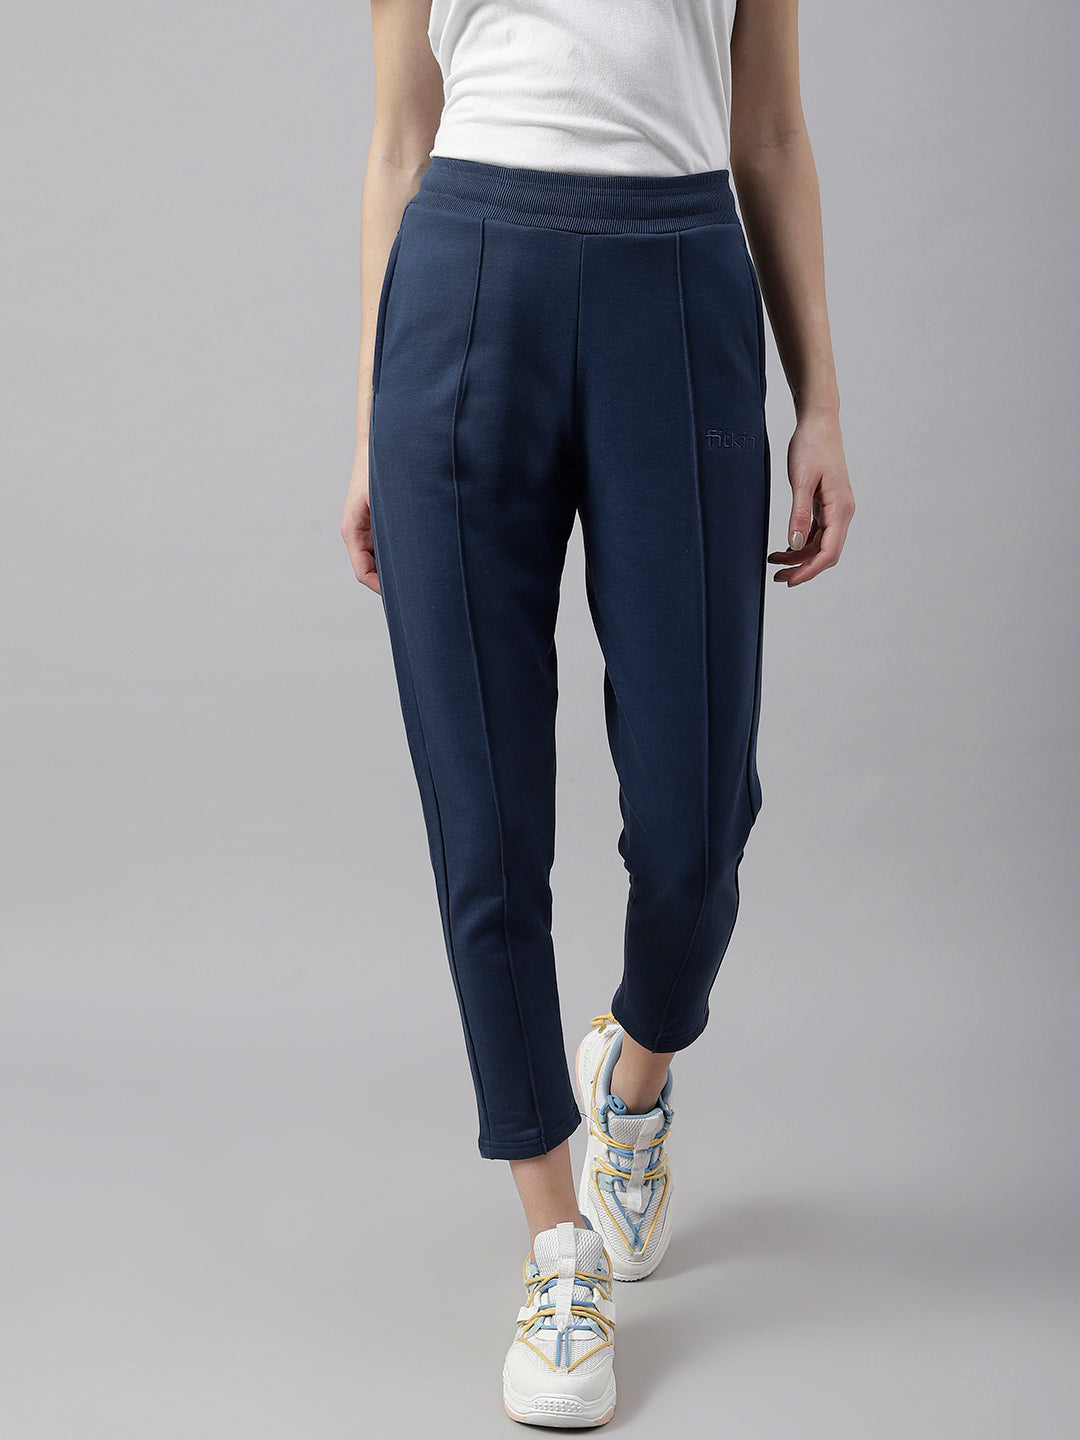 Buy Reebok Womens Lux Fleece Pants Online